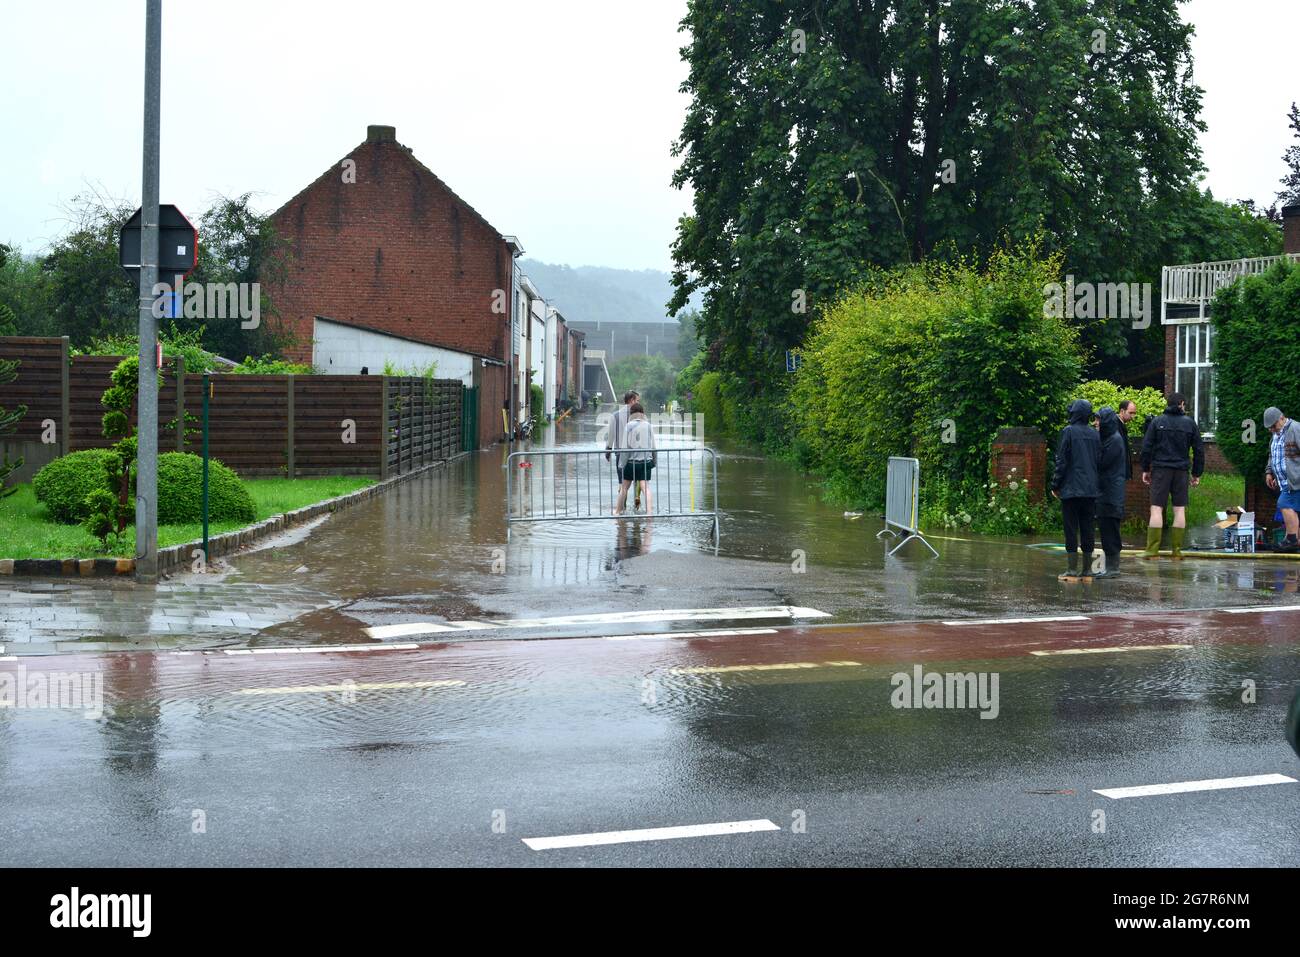 Wilsele, Vlaams-Brabant, Belgien - 15. Juli 2021: Wegen tagelang Regenfällen können Straßenüberflutete nicht auf die Toilette gehen, weil sie die toilette nicht spülen können Stockfoto